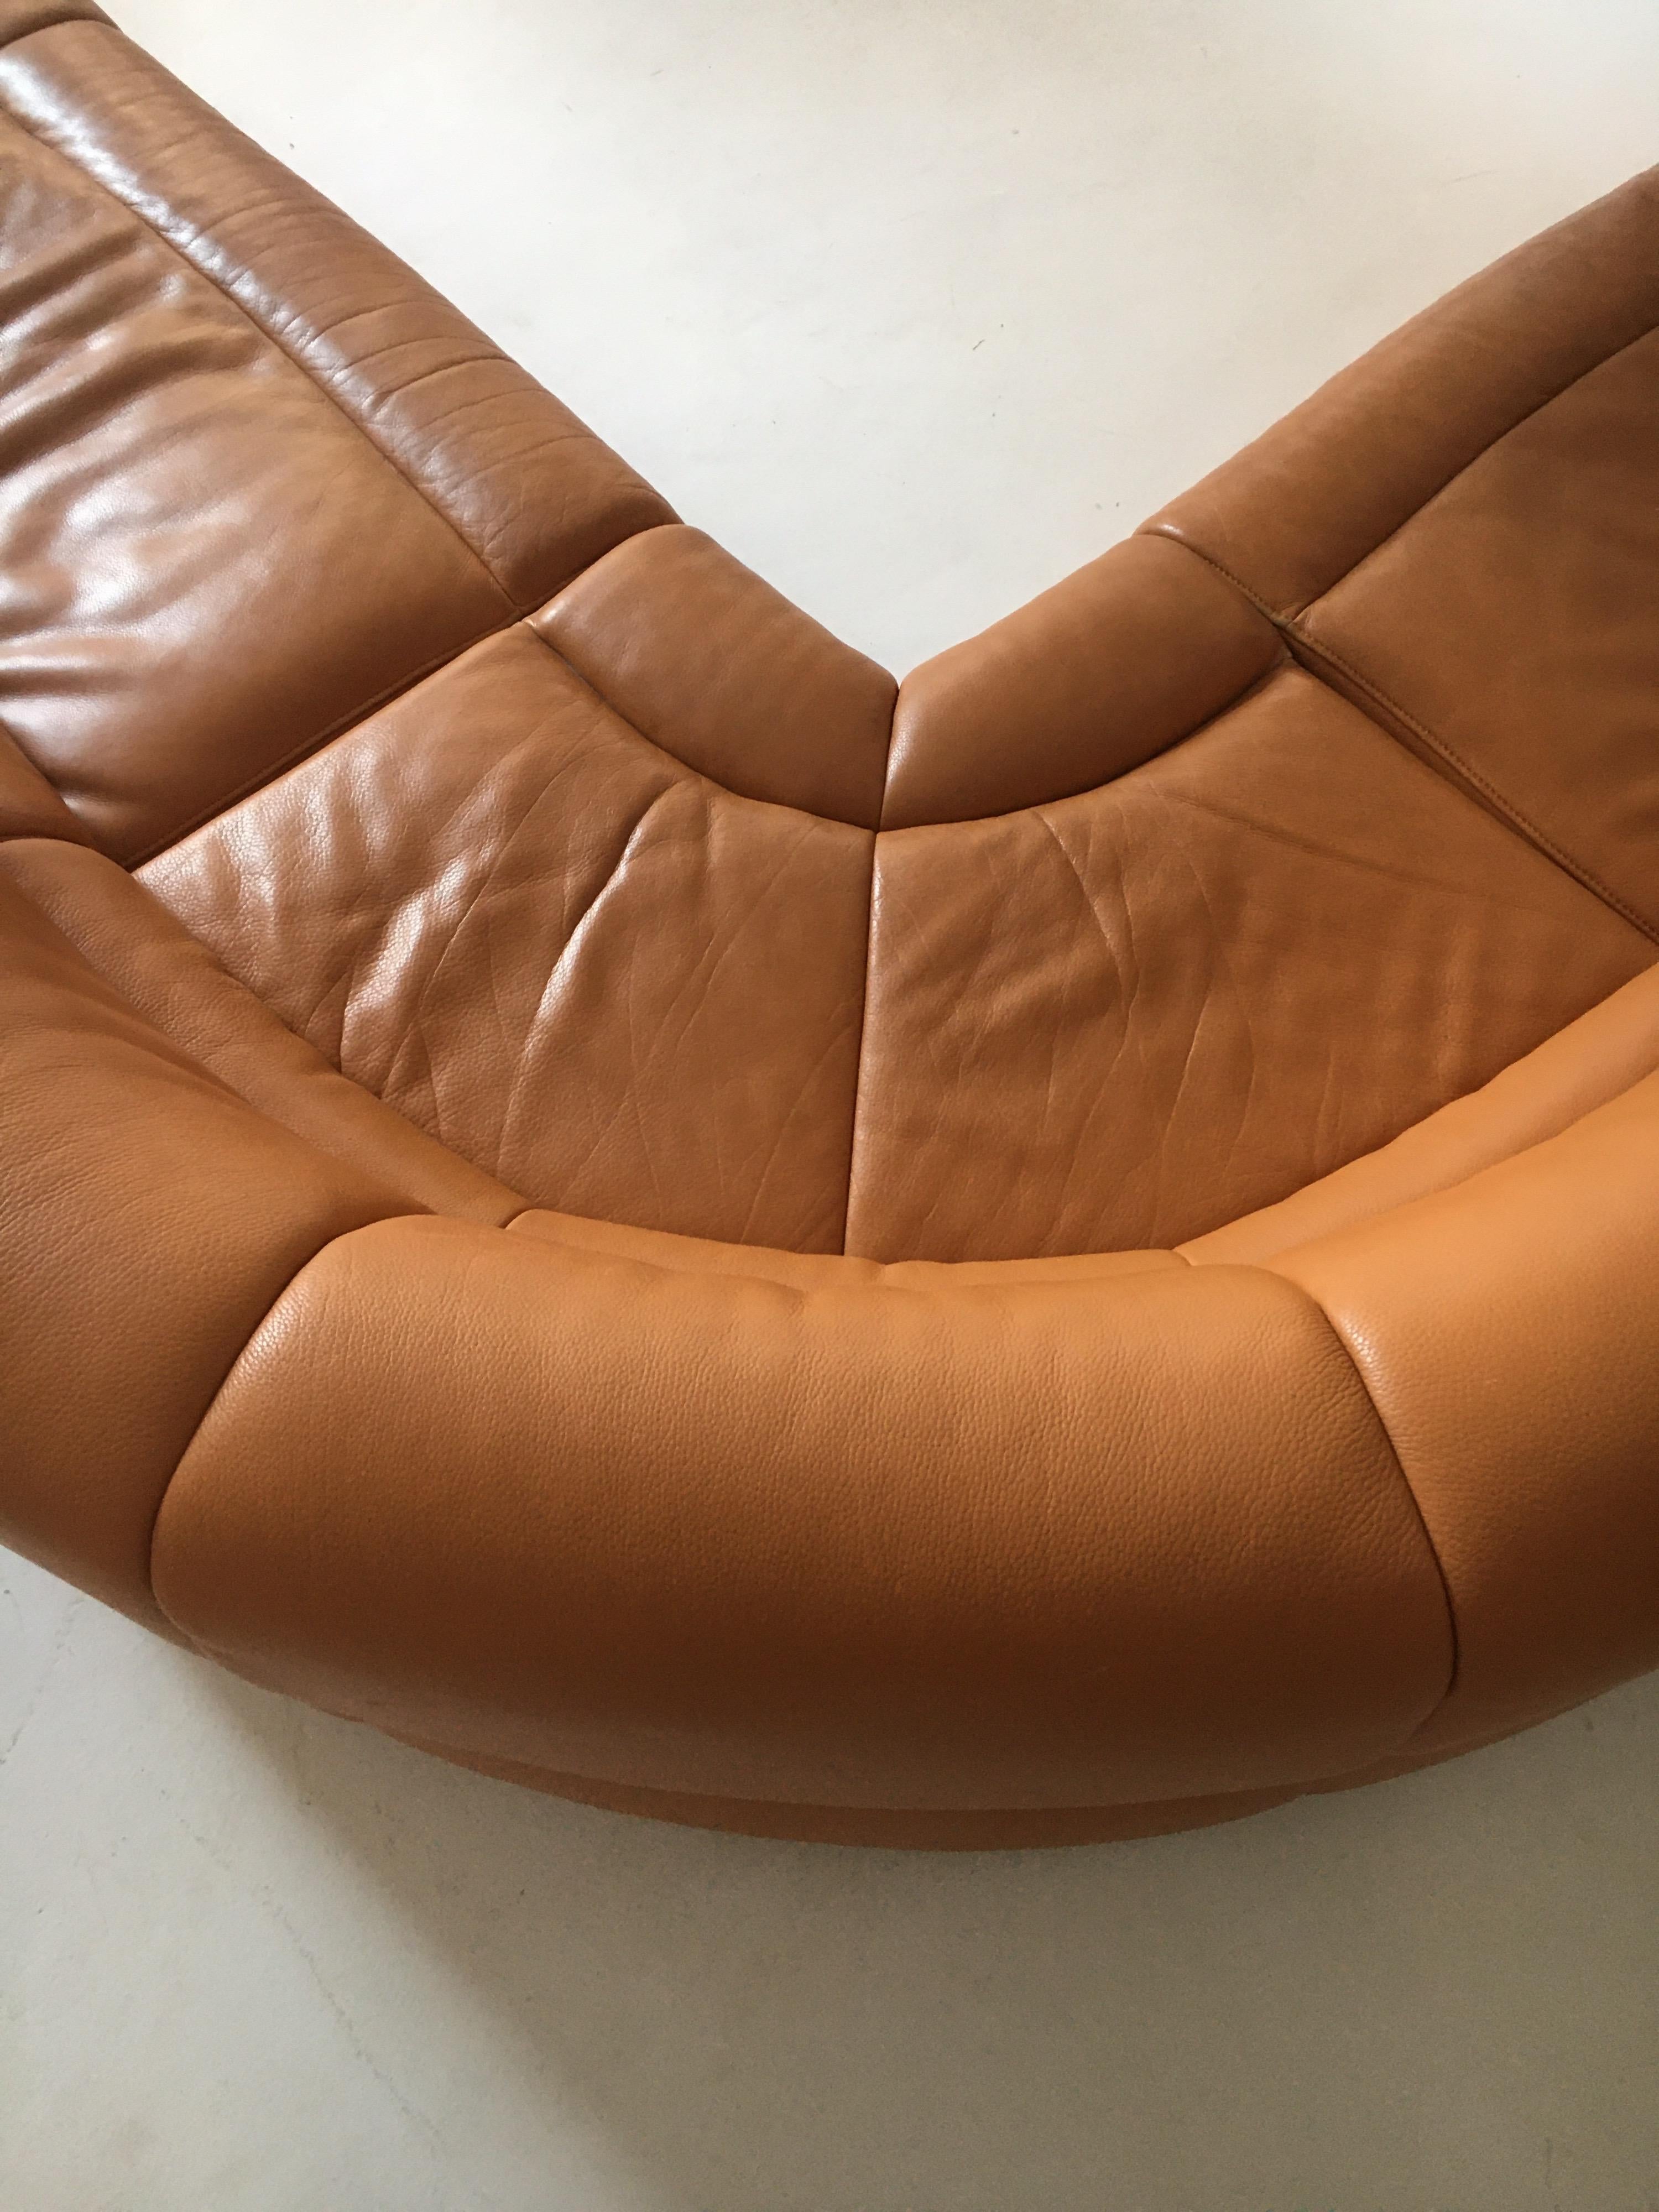 De Sede DS-18 Vintage Patinated Cognac Leather Sectional Sofa, Switzerland 1980s 6